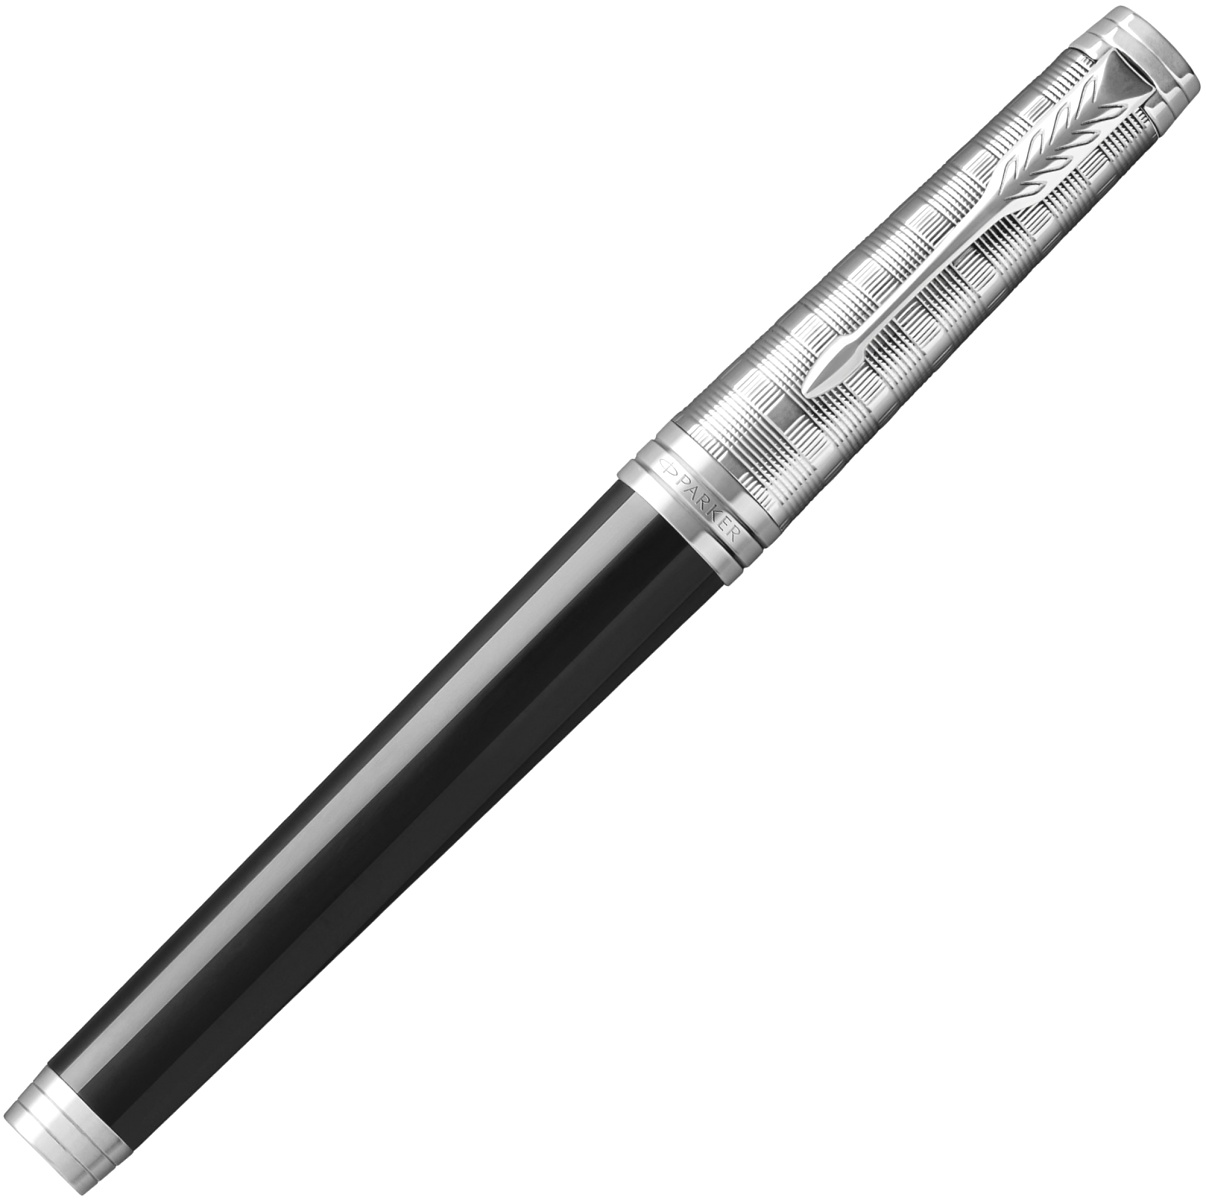 Перьевая ручка Parker Premier Castom Tartan F561, Black PT (Перо F), фото 2